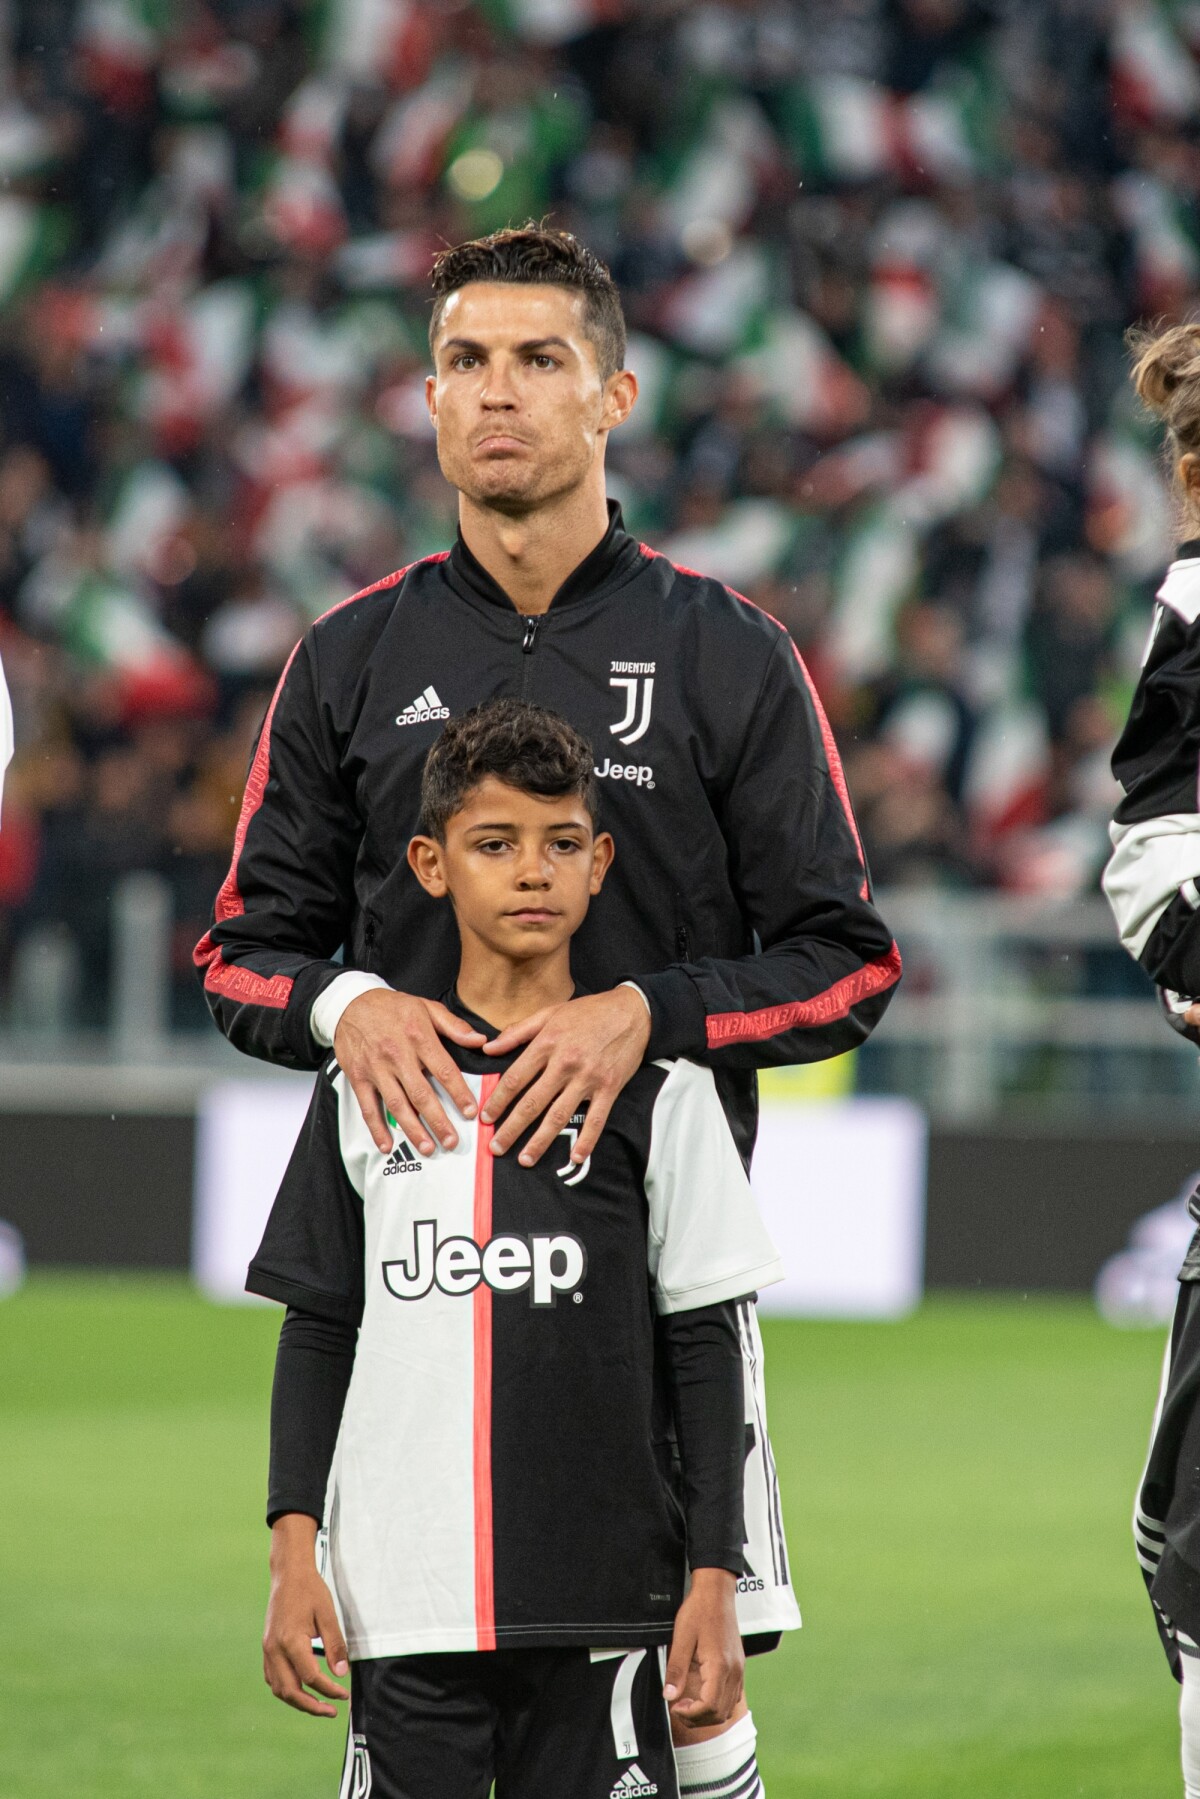 Cette photo du fils de Cristiano Ronaldo inquiète beaucoup ses fans